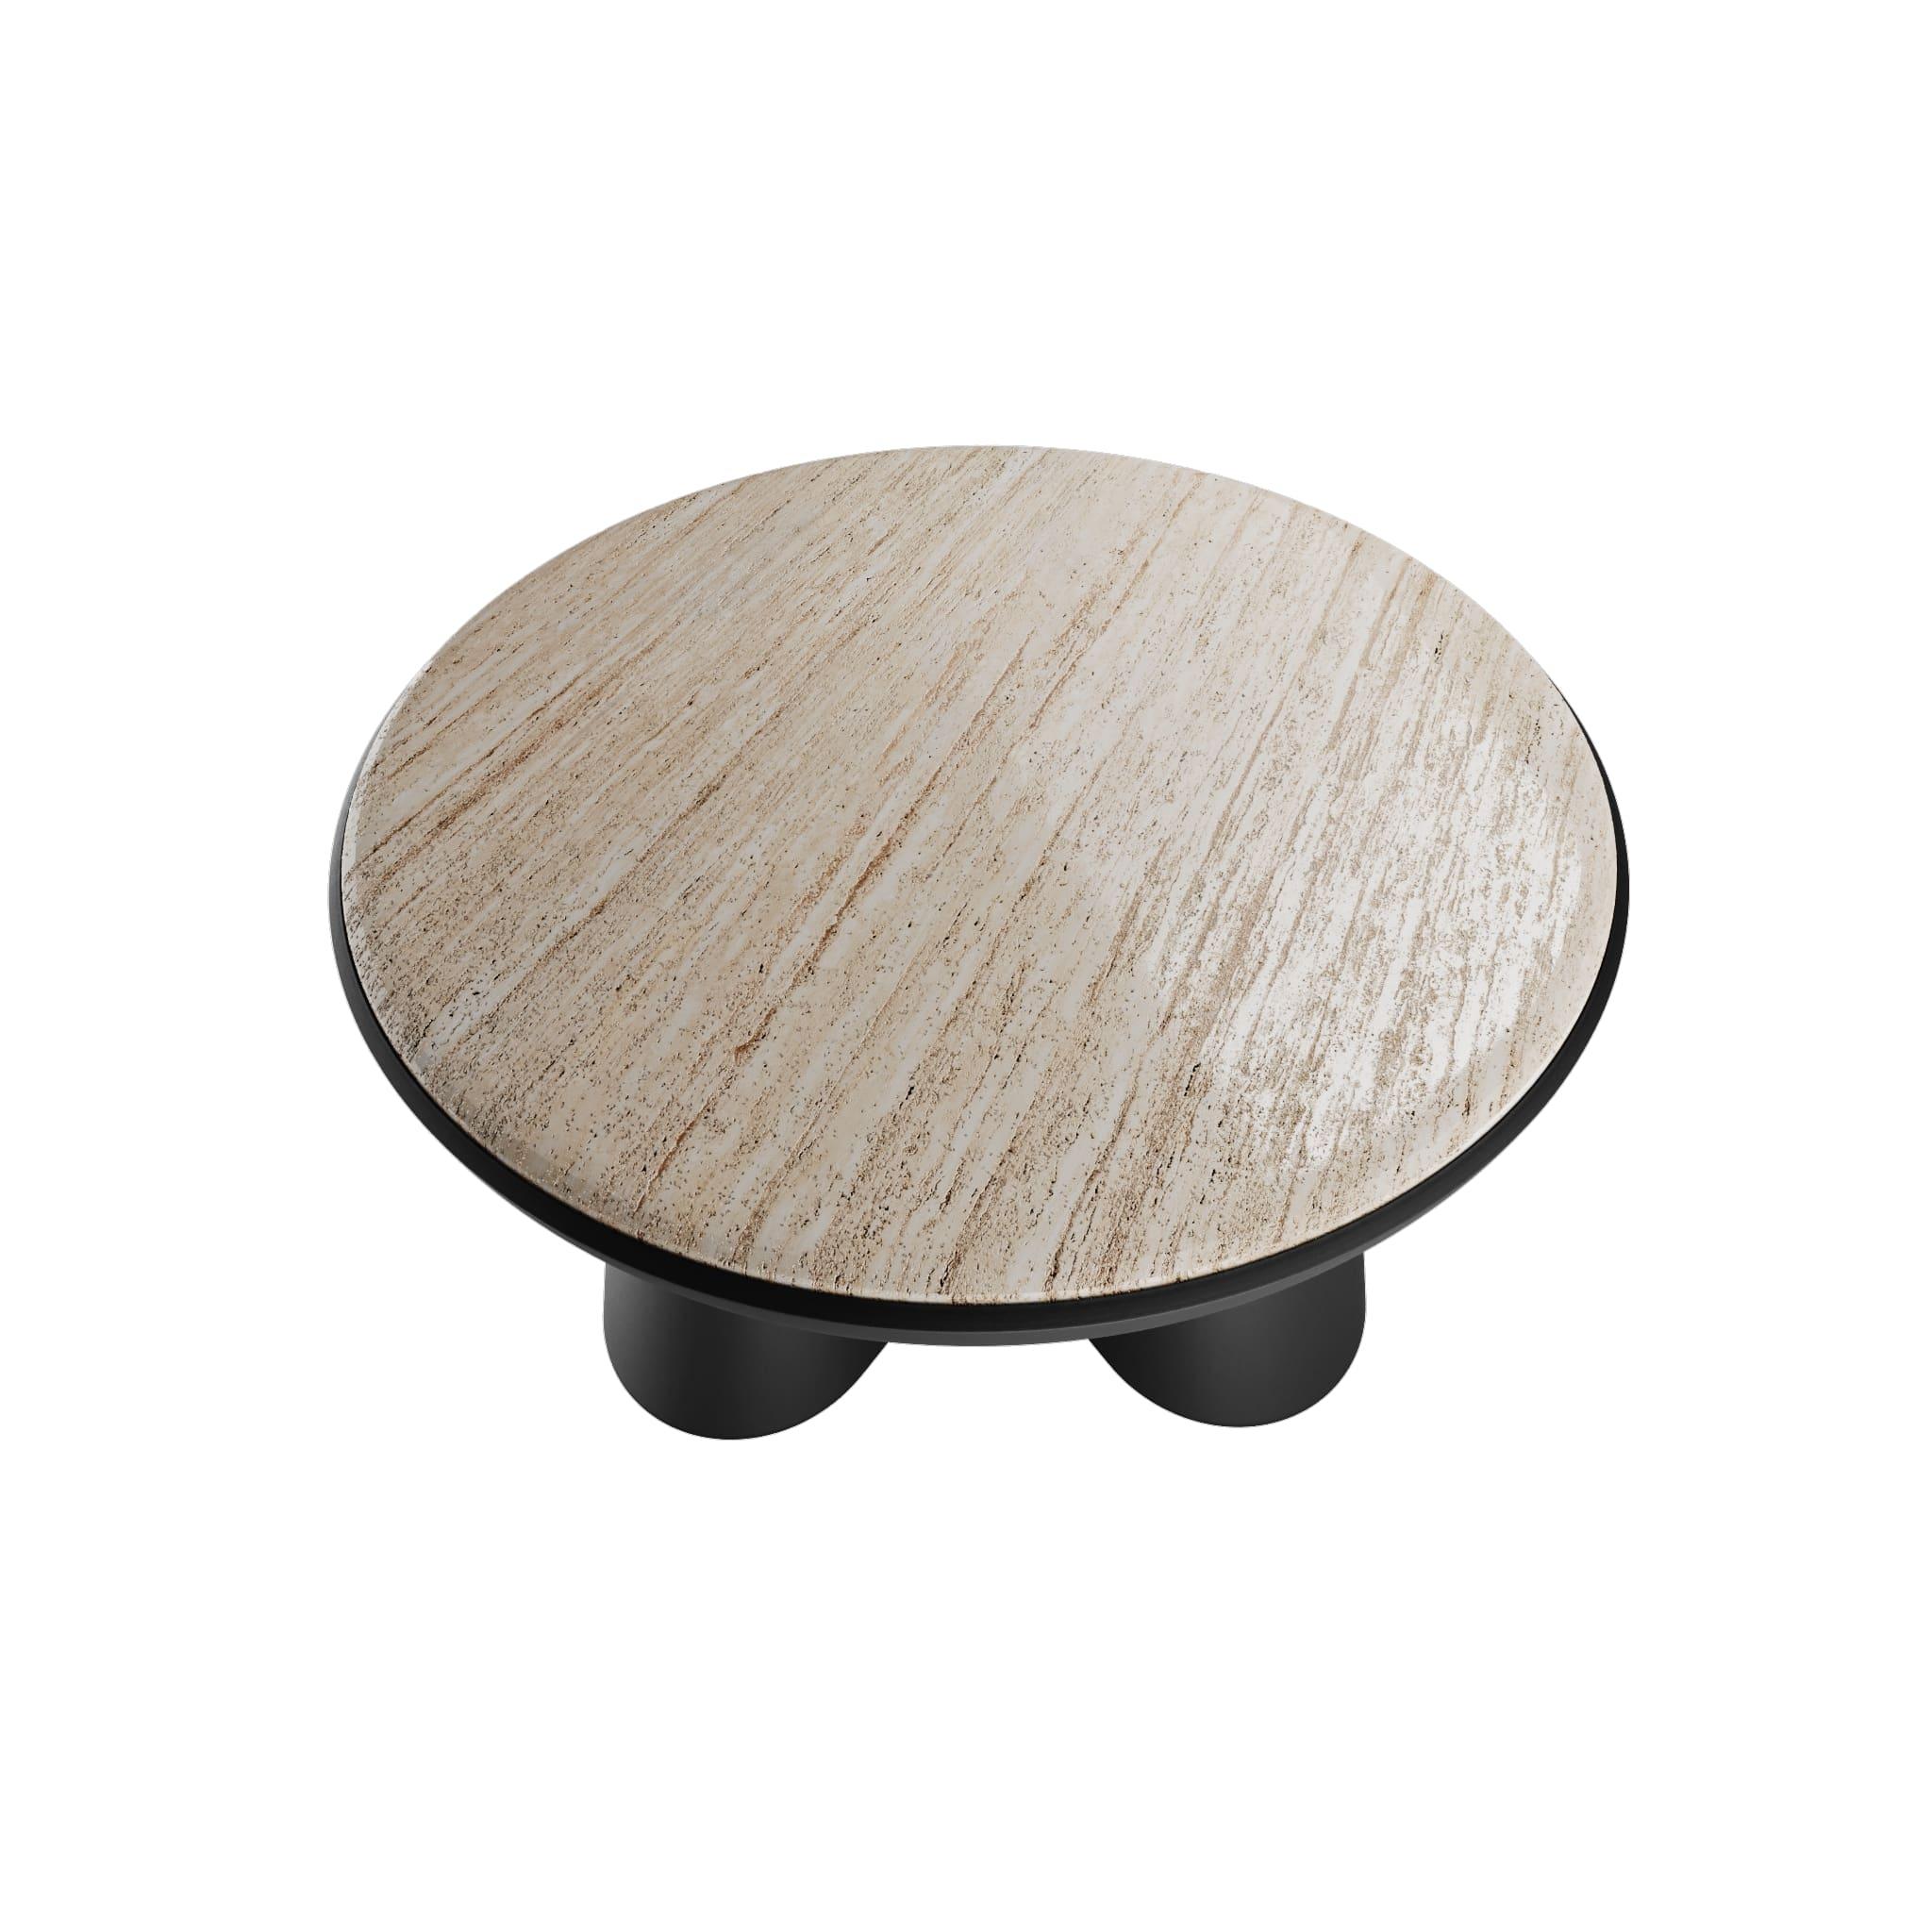 Fifih Center Table Black & Travertine ist ein moderner Couchtisch, der durch eine Mischung aus verschiedenen Texturen und einer minimalen Silhouette besticht. Fifih Center Table Black & Travertine kann entweder als Einzelstück oder in Kombination